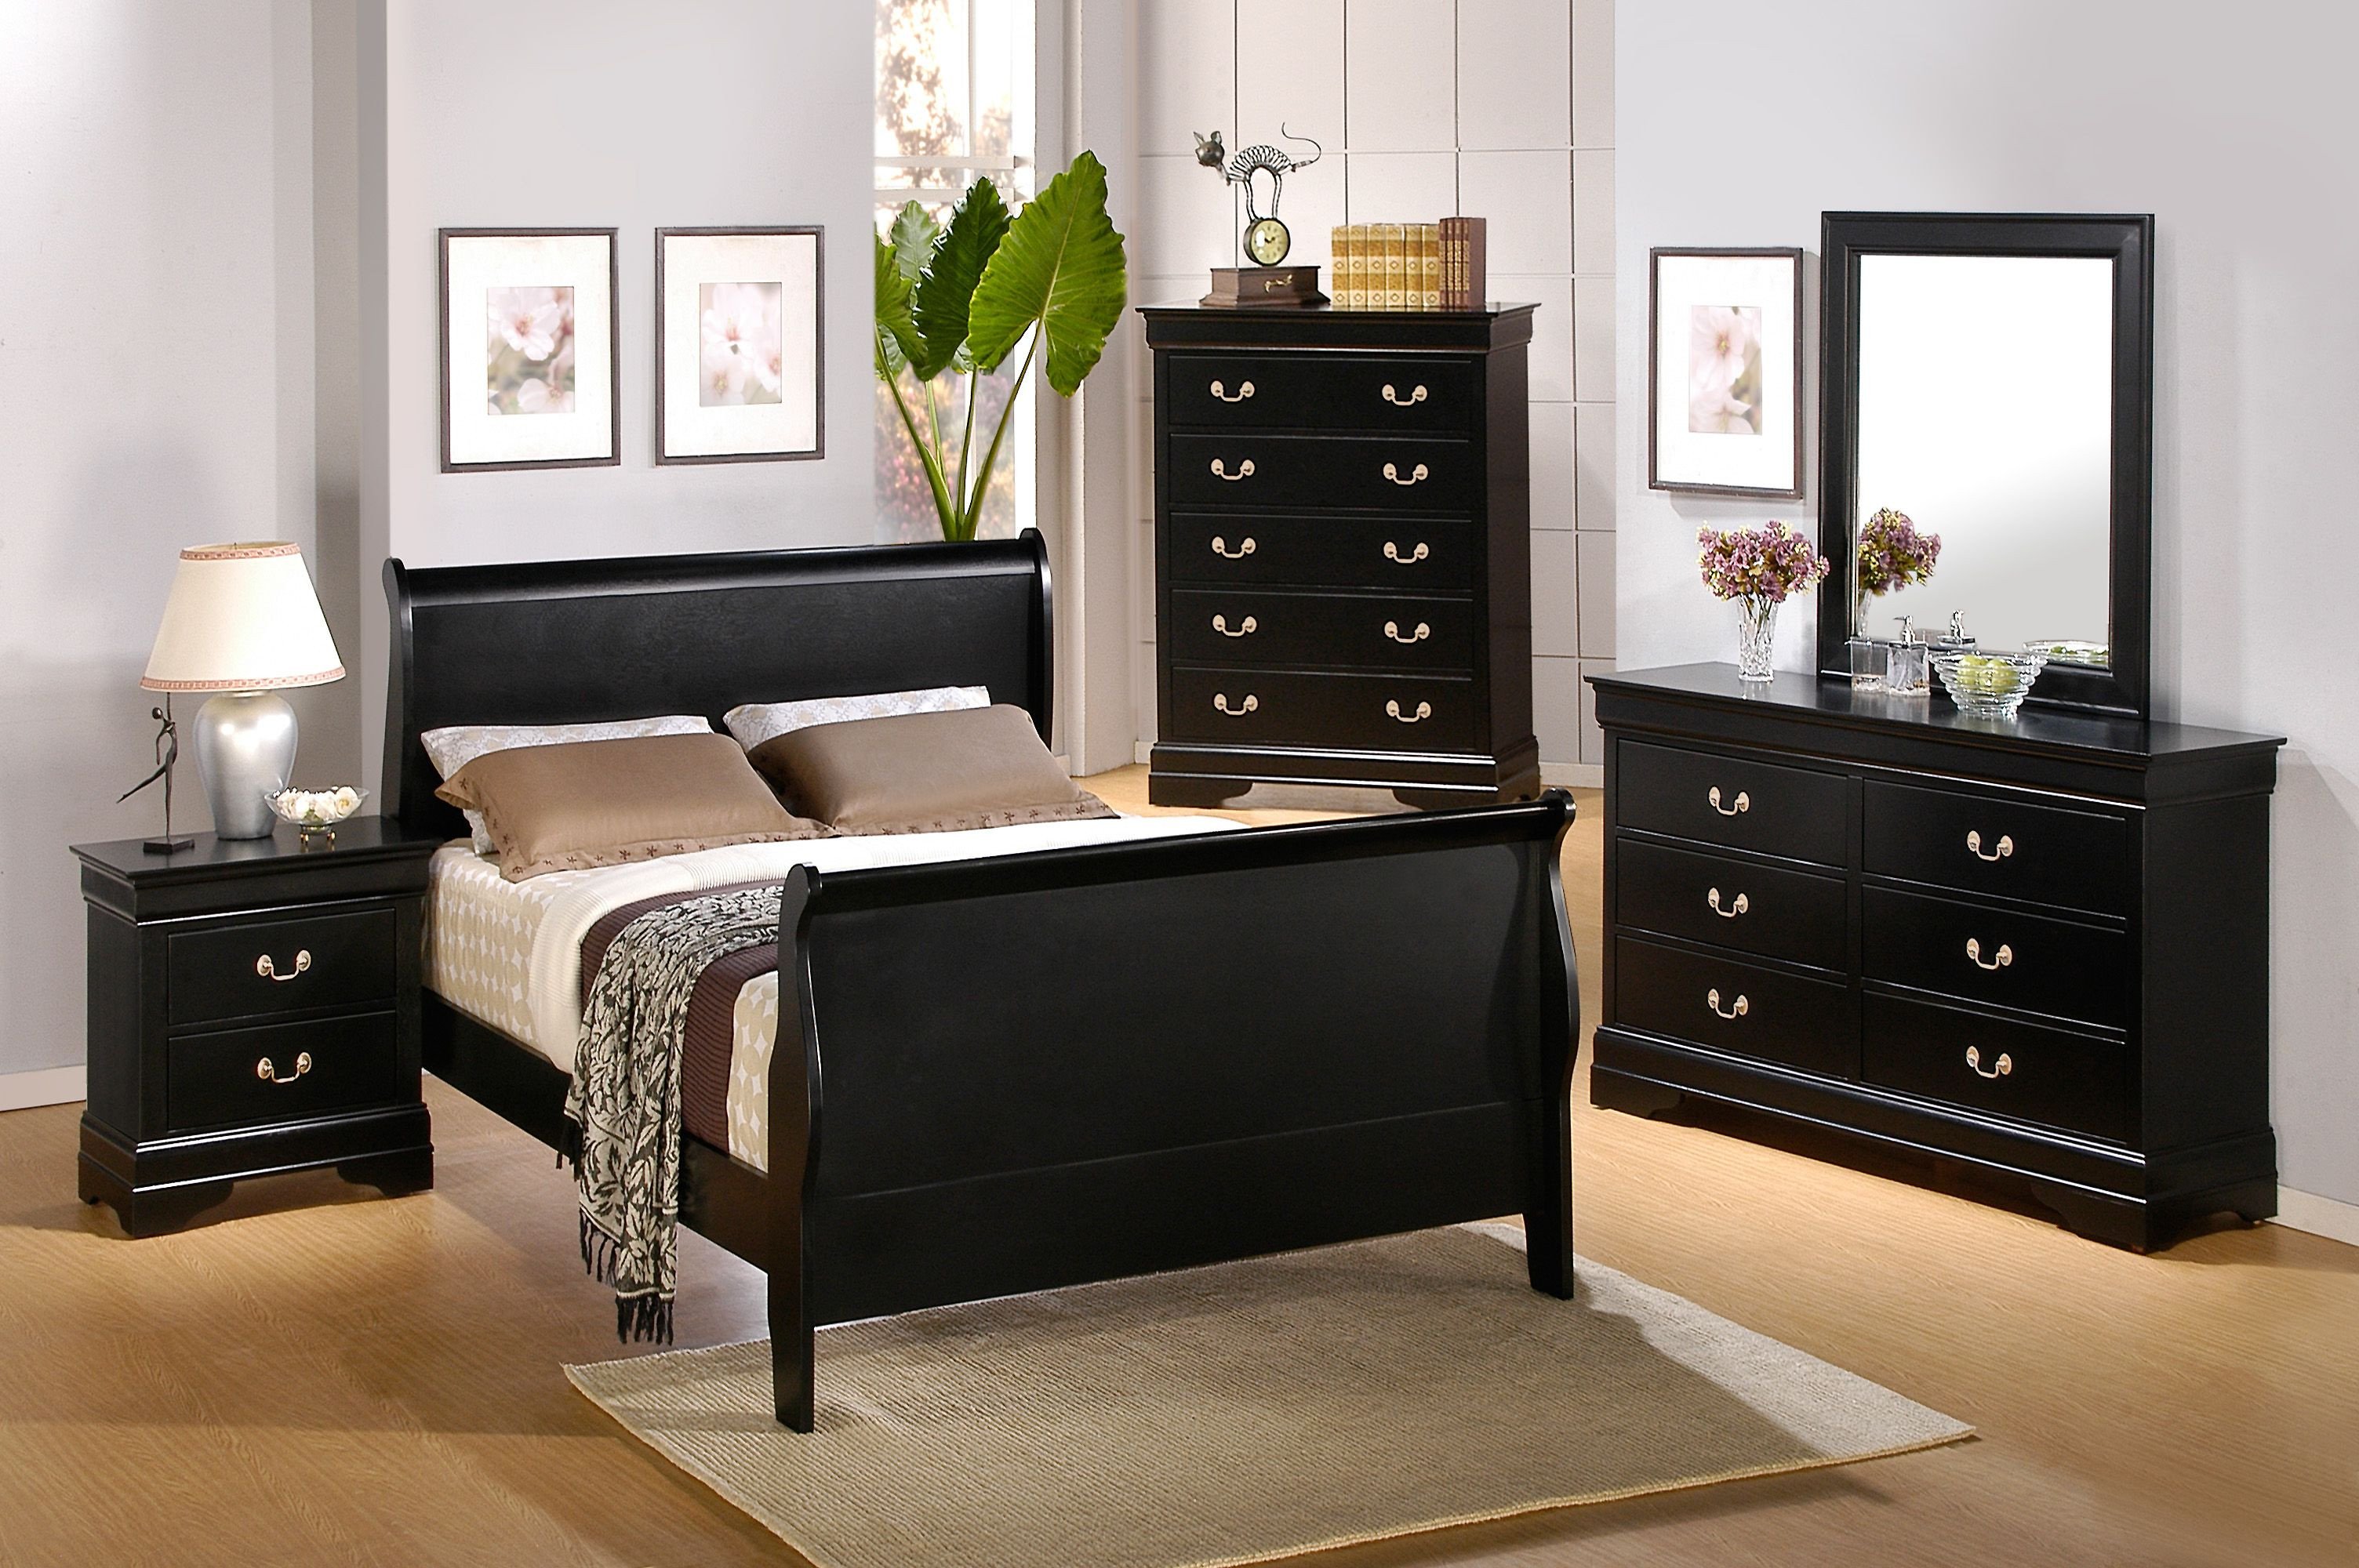 Black Full Size Bedroom Set Elegant Bedroom Furniture Dressers Best for Homes